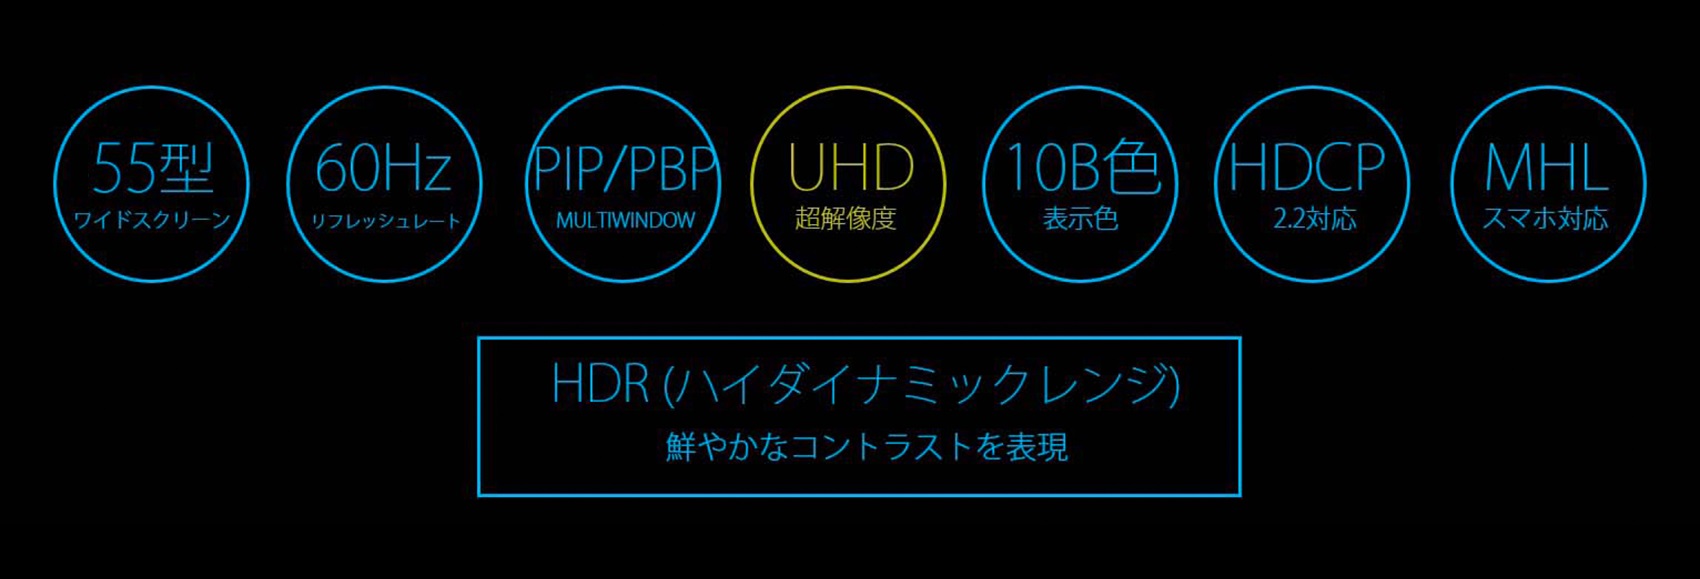 (60Hz) PIP/PBP (UHD) (10BÉ ( HDCP) (MHL (ワイドスクリーン) リフレッシュレート/ MULTIWINDOW 超解像度 表示色 2.2対応 スマホ対応 HDR (ハイダイナミックレンジ) 鮮やかなコントラストを表現